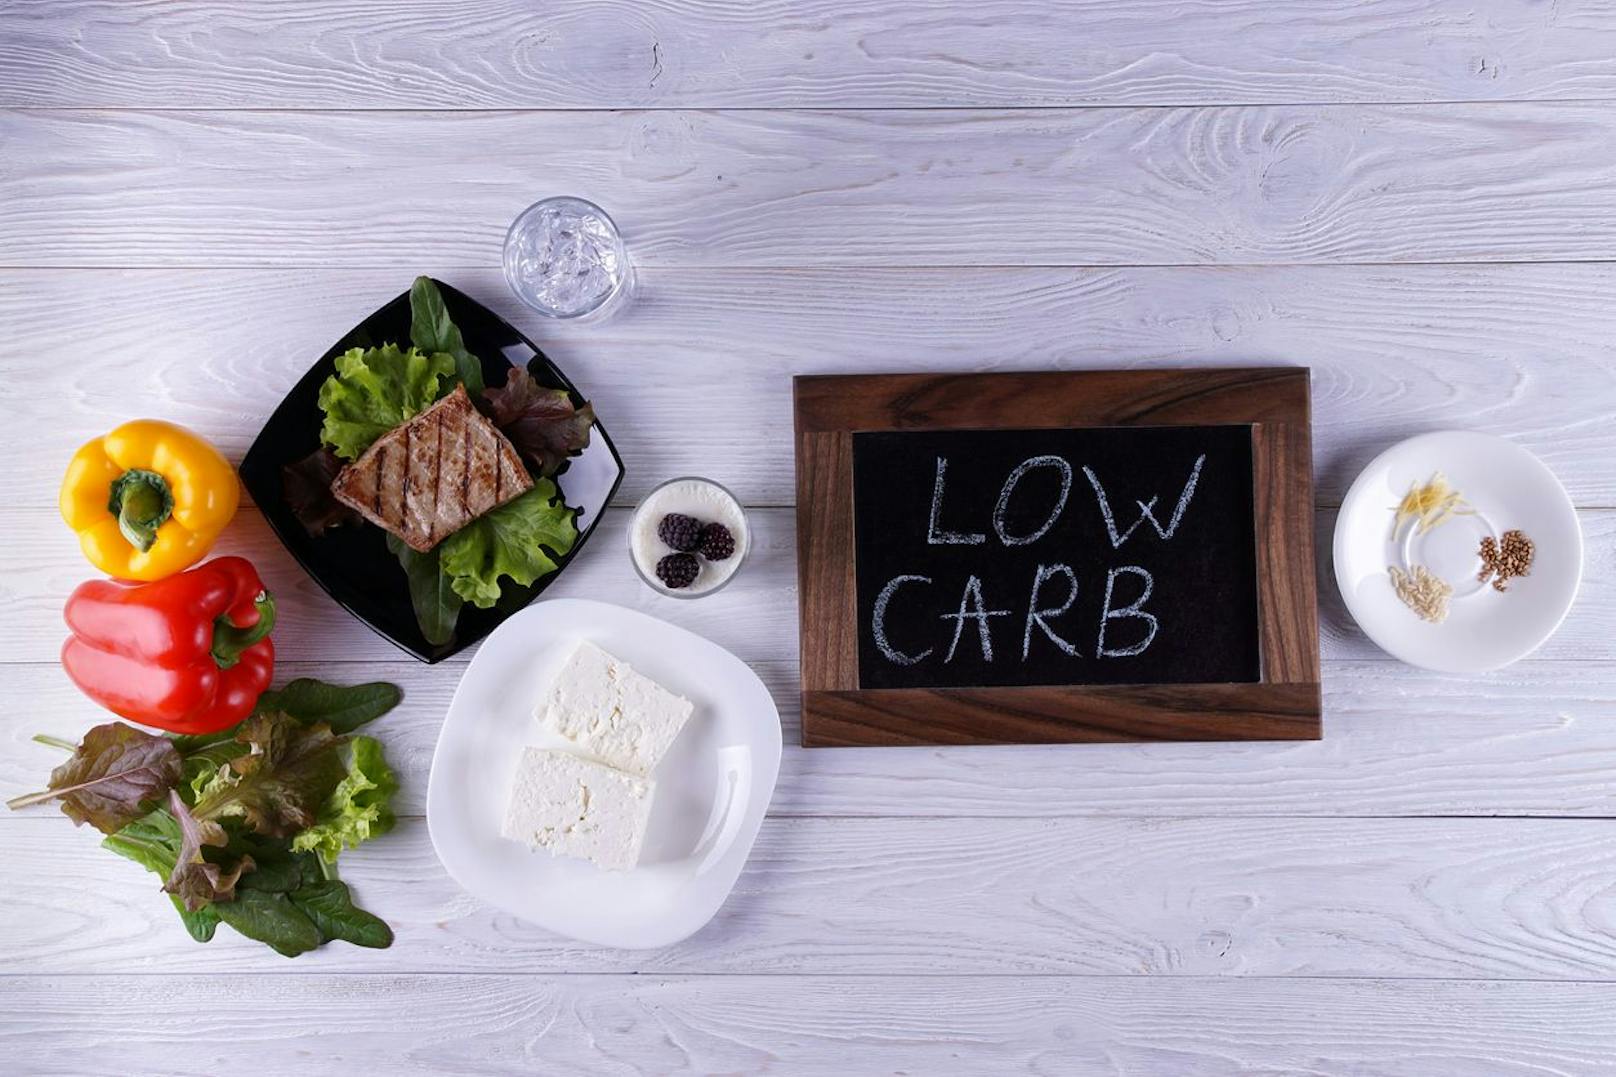 Der Begriff Low Carb&nbsp;bezeichnet verschiedene Ernährungsformen oder Diäten, bei denen der Anteil der Kohlenhydrate an der täglichen Nahrung reduziert wird.